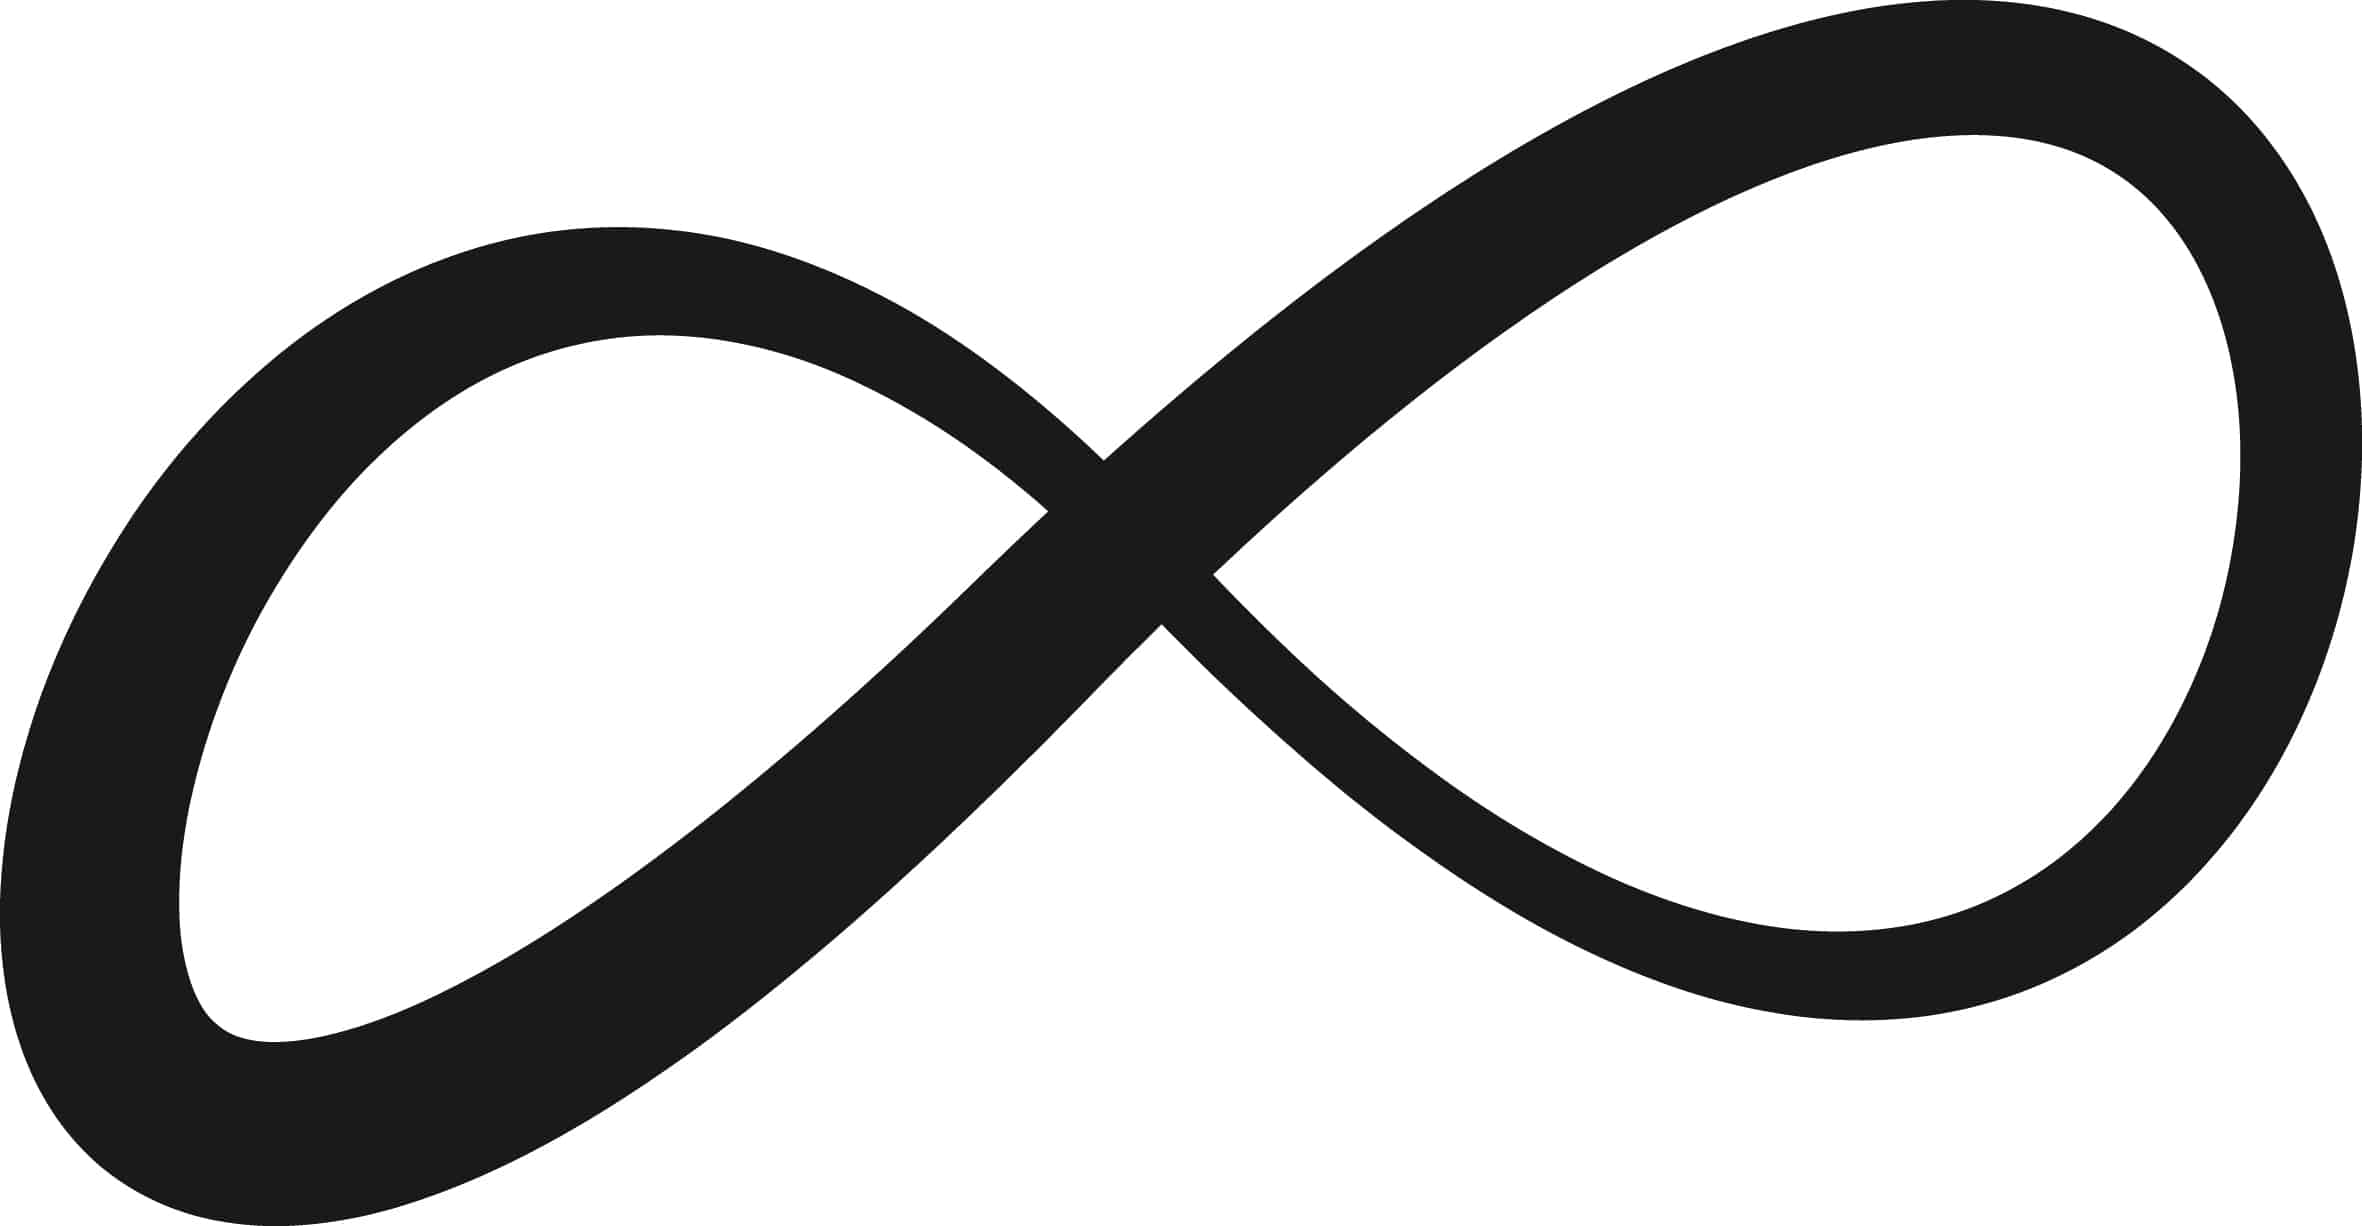 Vinzenz Pallottis Symbol für "Gott, die unendliche Liebe" - das Unendlichkeitszeichen